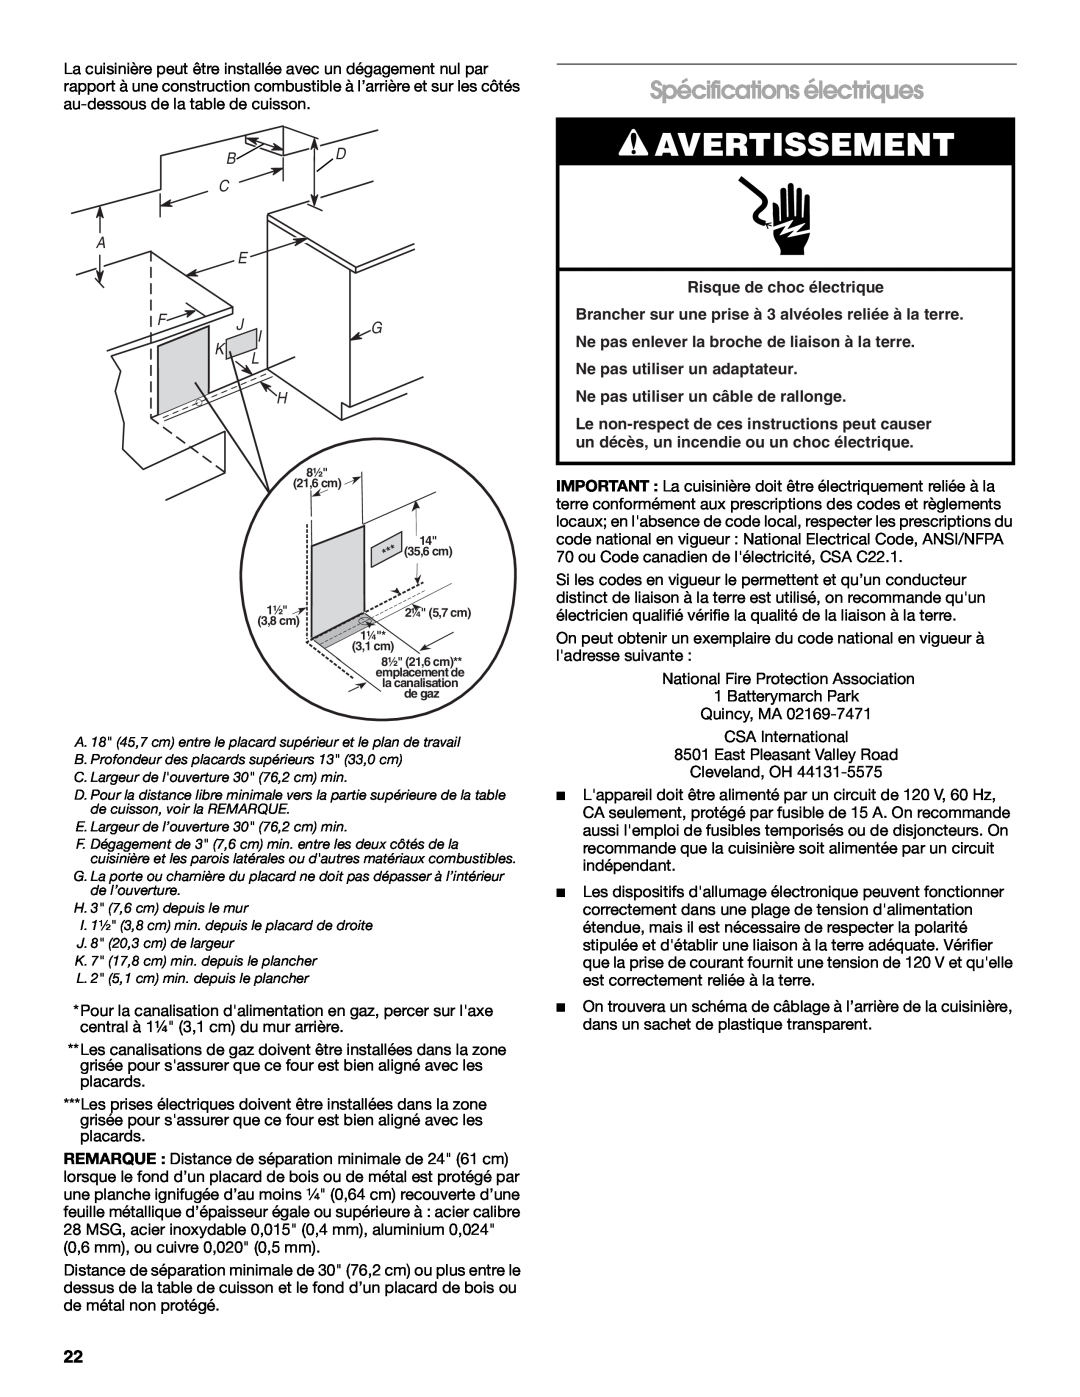 Whirlpool W10526071A installation instructions Spécifications électriques, Avertissement, Ne pas utiliser un adaptateur 